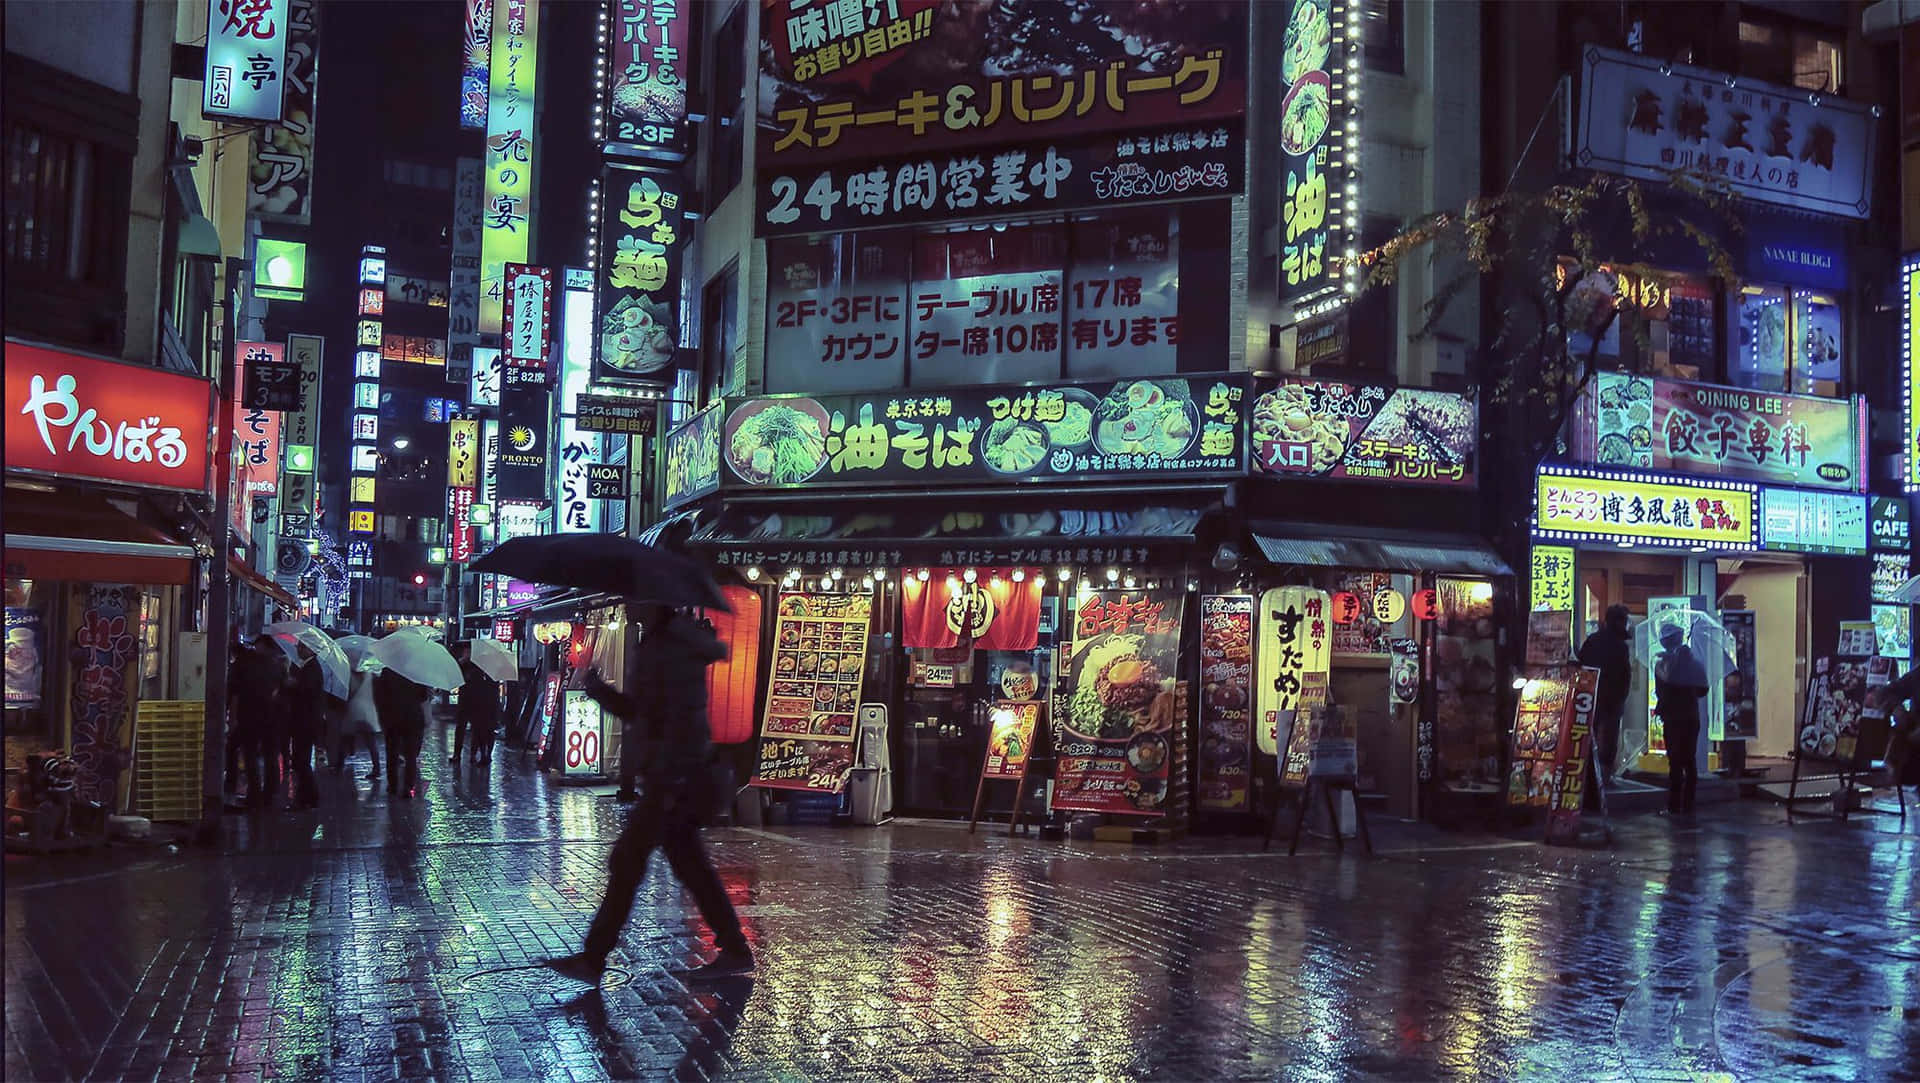 Sientela Energía De Un Sorprendente Paisaje Urbano En Japón Cyberpunk. Fondo de pantalla